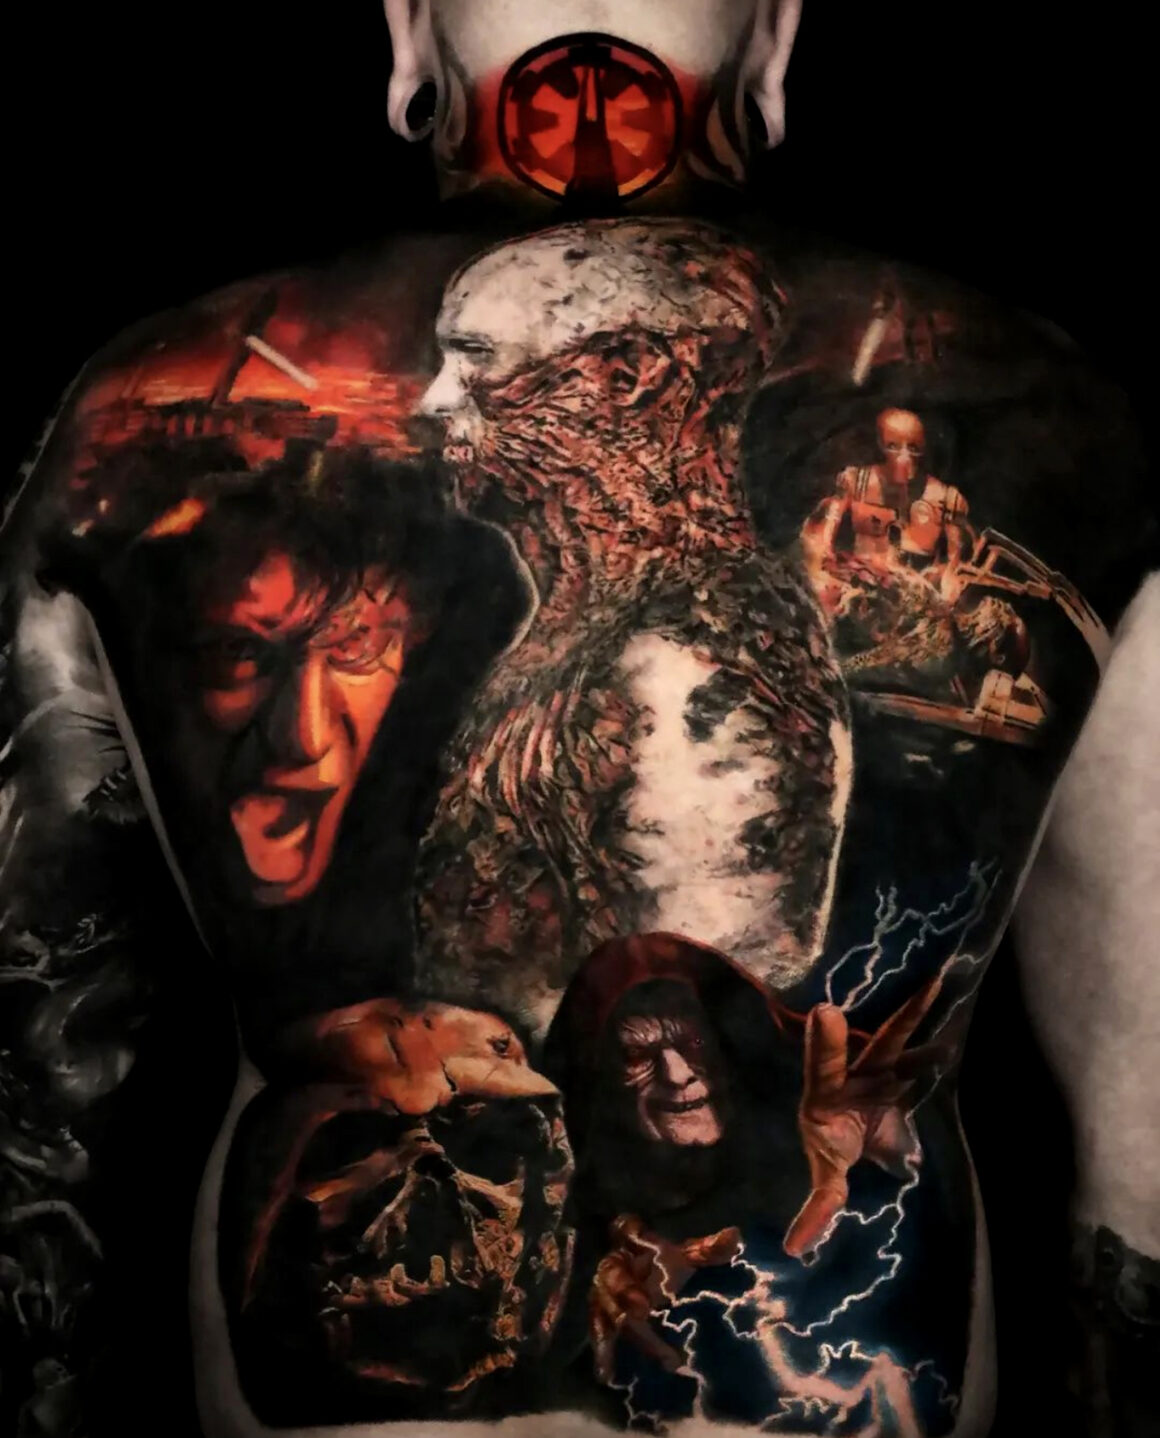 Tatouage de Stefan, Théâtre de tatouage Arc-en-Ciel Noir, @ stefan_tattoos